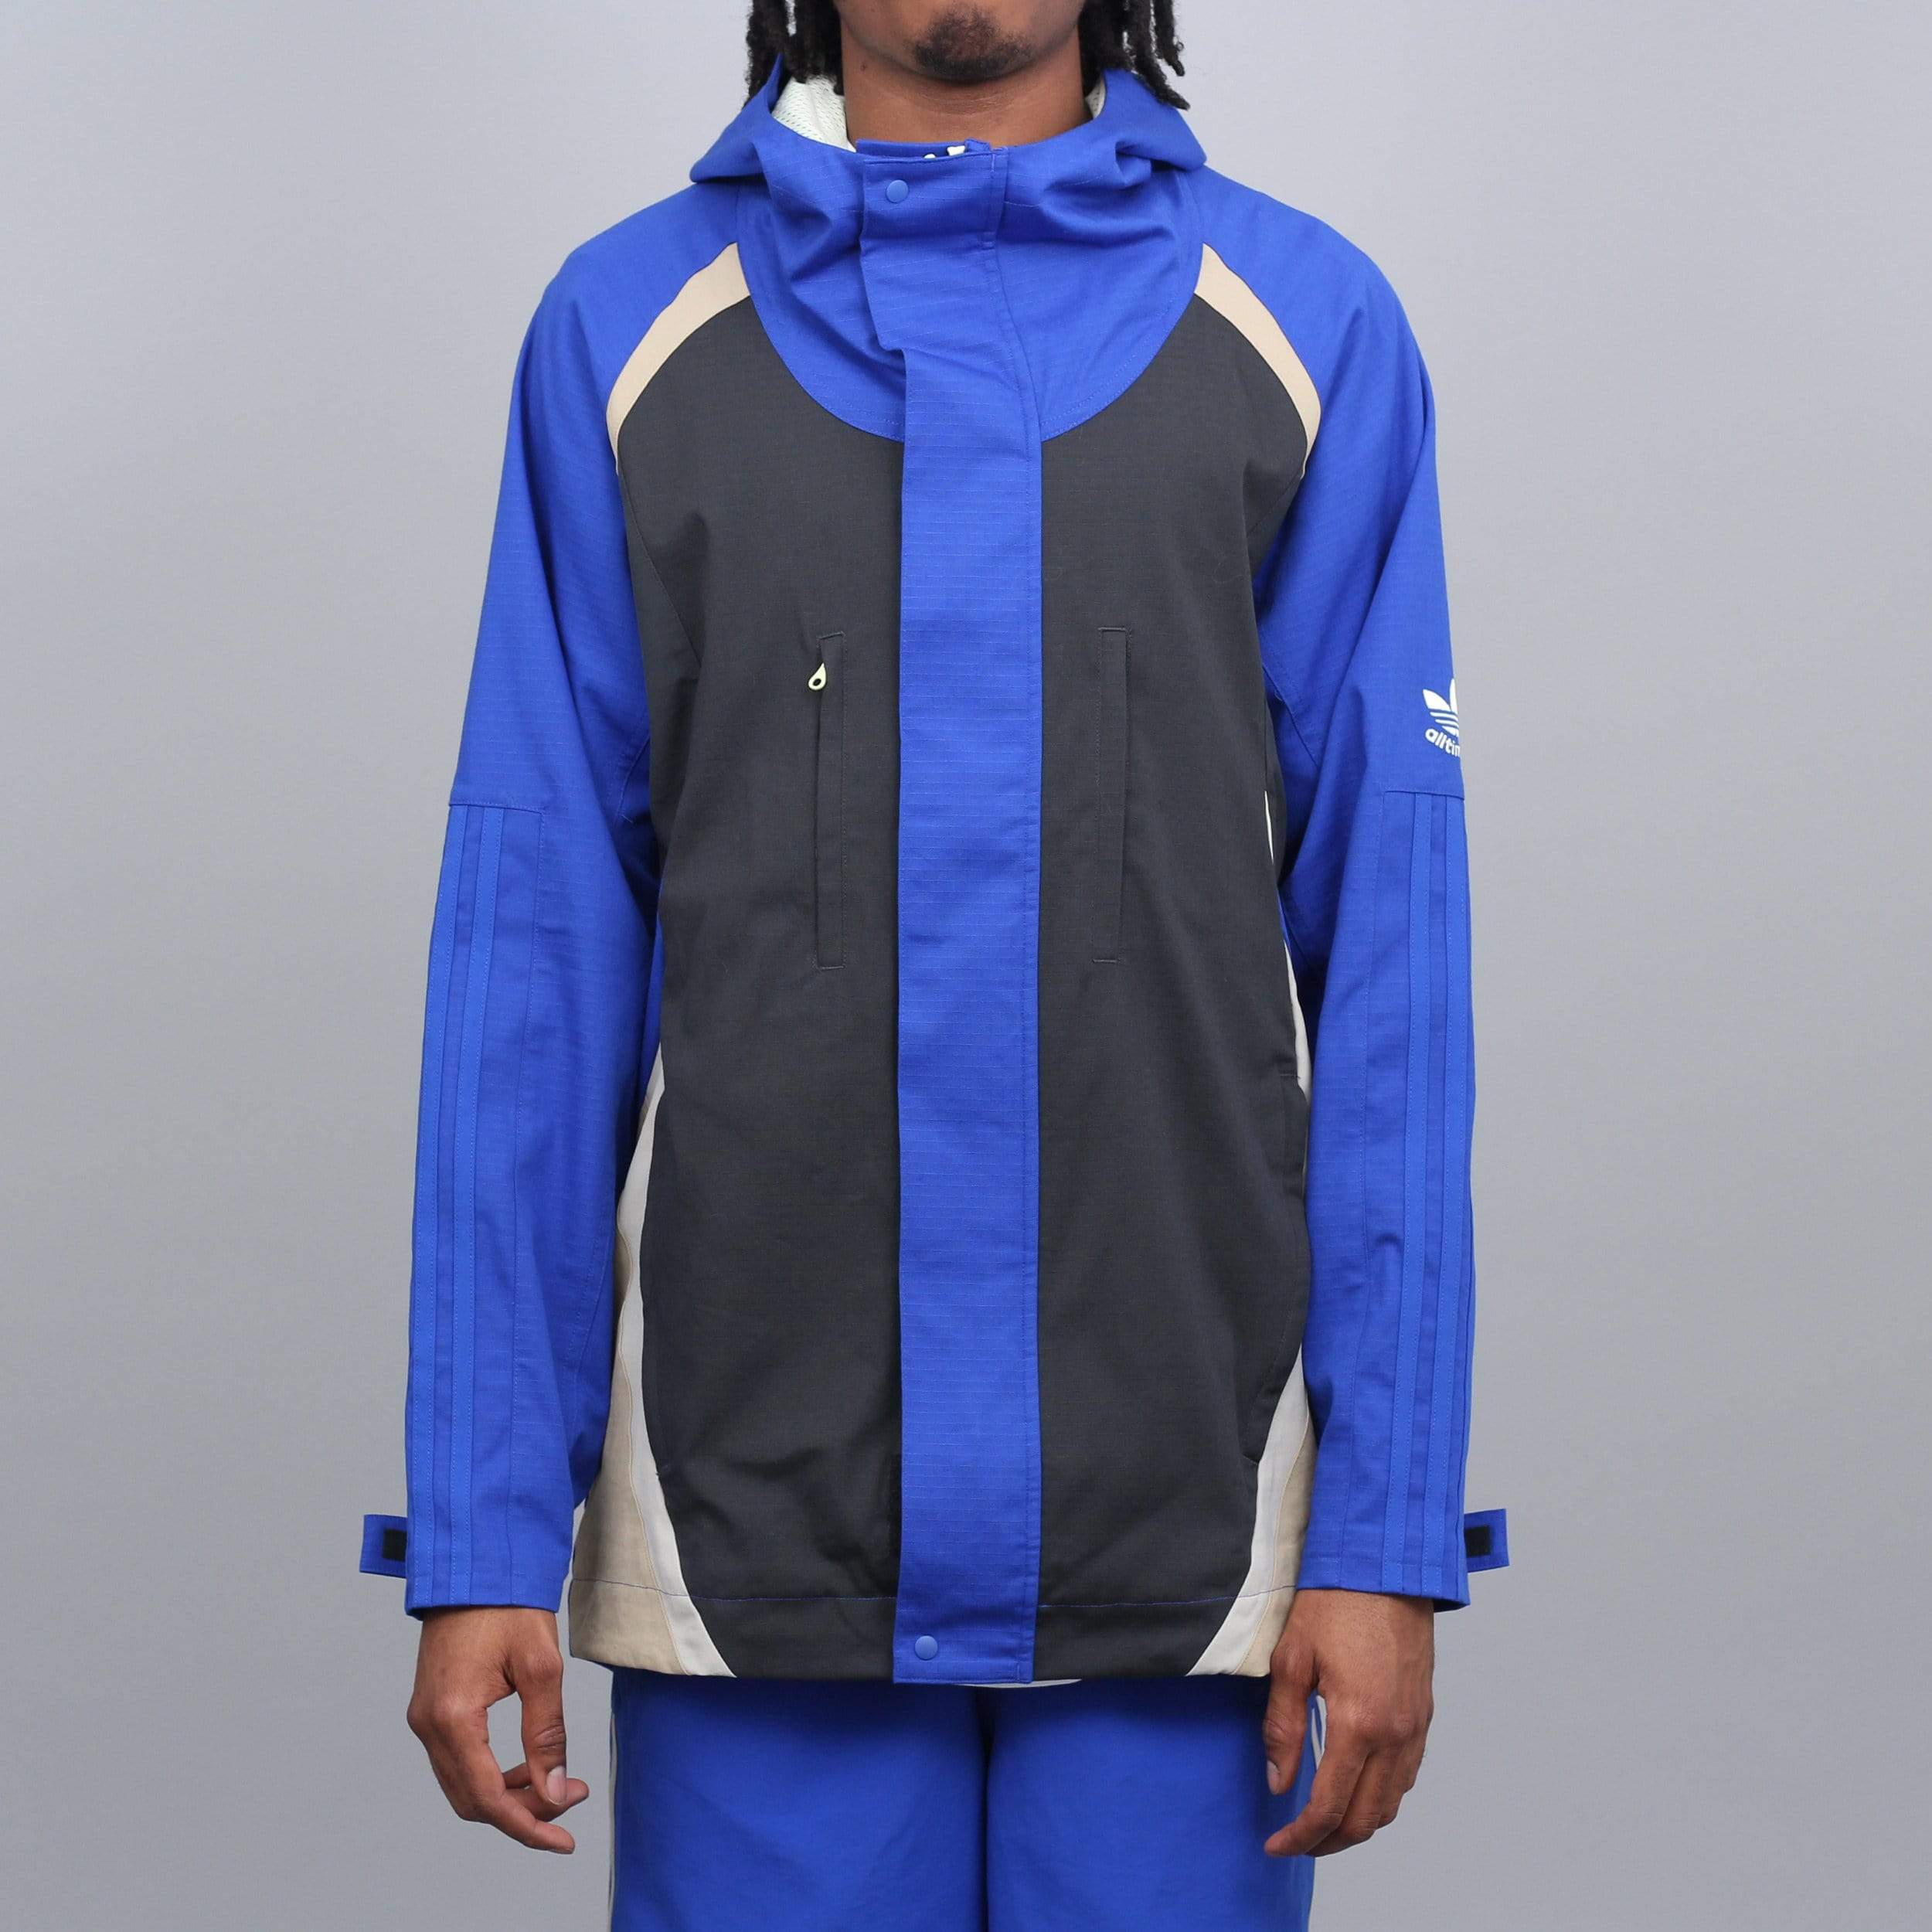 Sinewi Talentoso Oxidar adidas X Alltimers Jacket Bold Blue / Carbon / Hemp - Slam City Skates